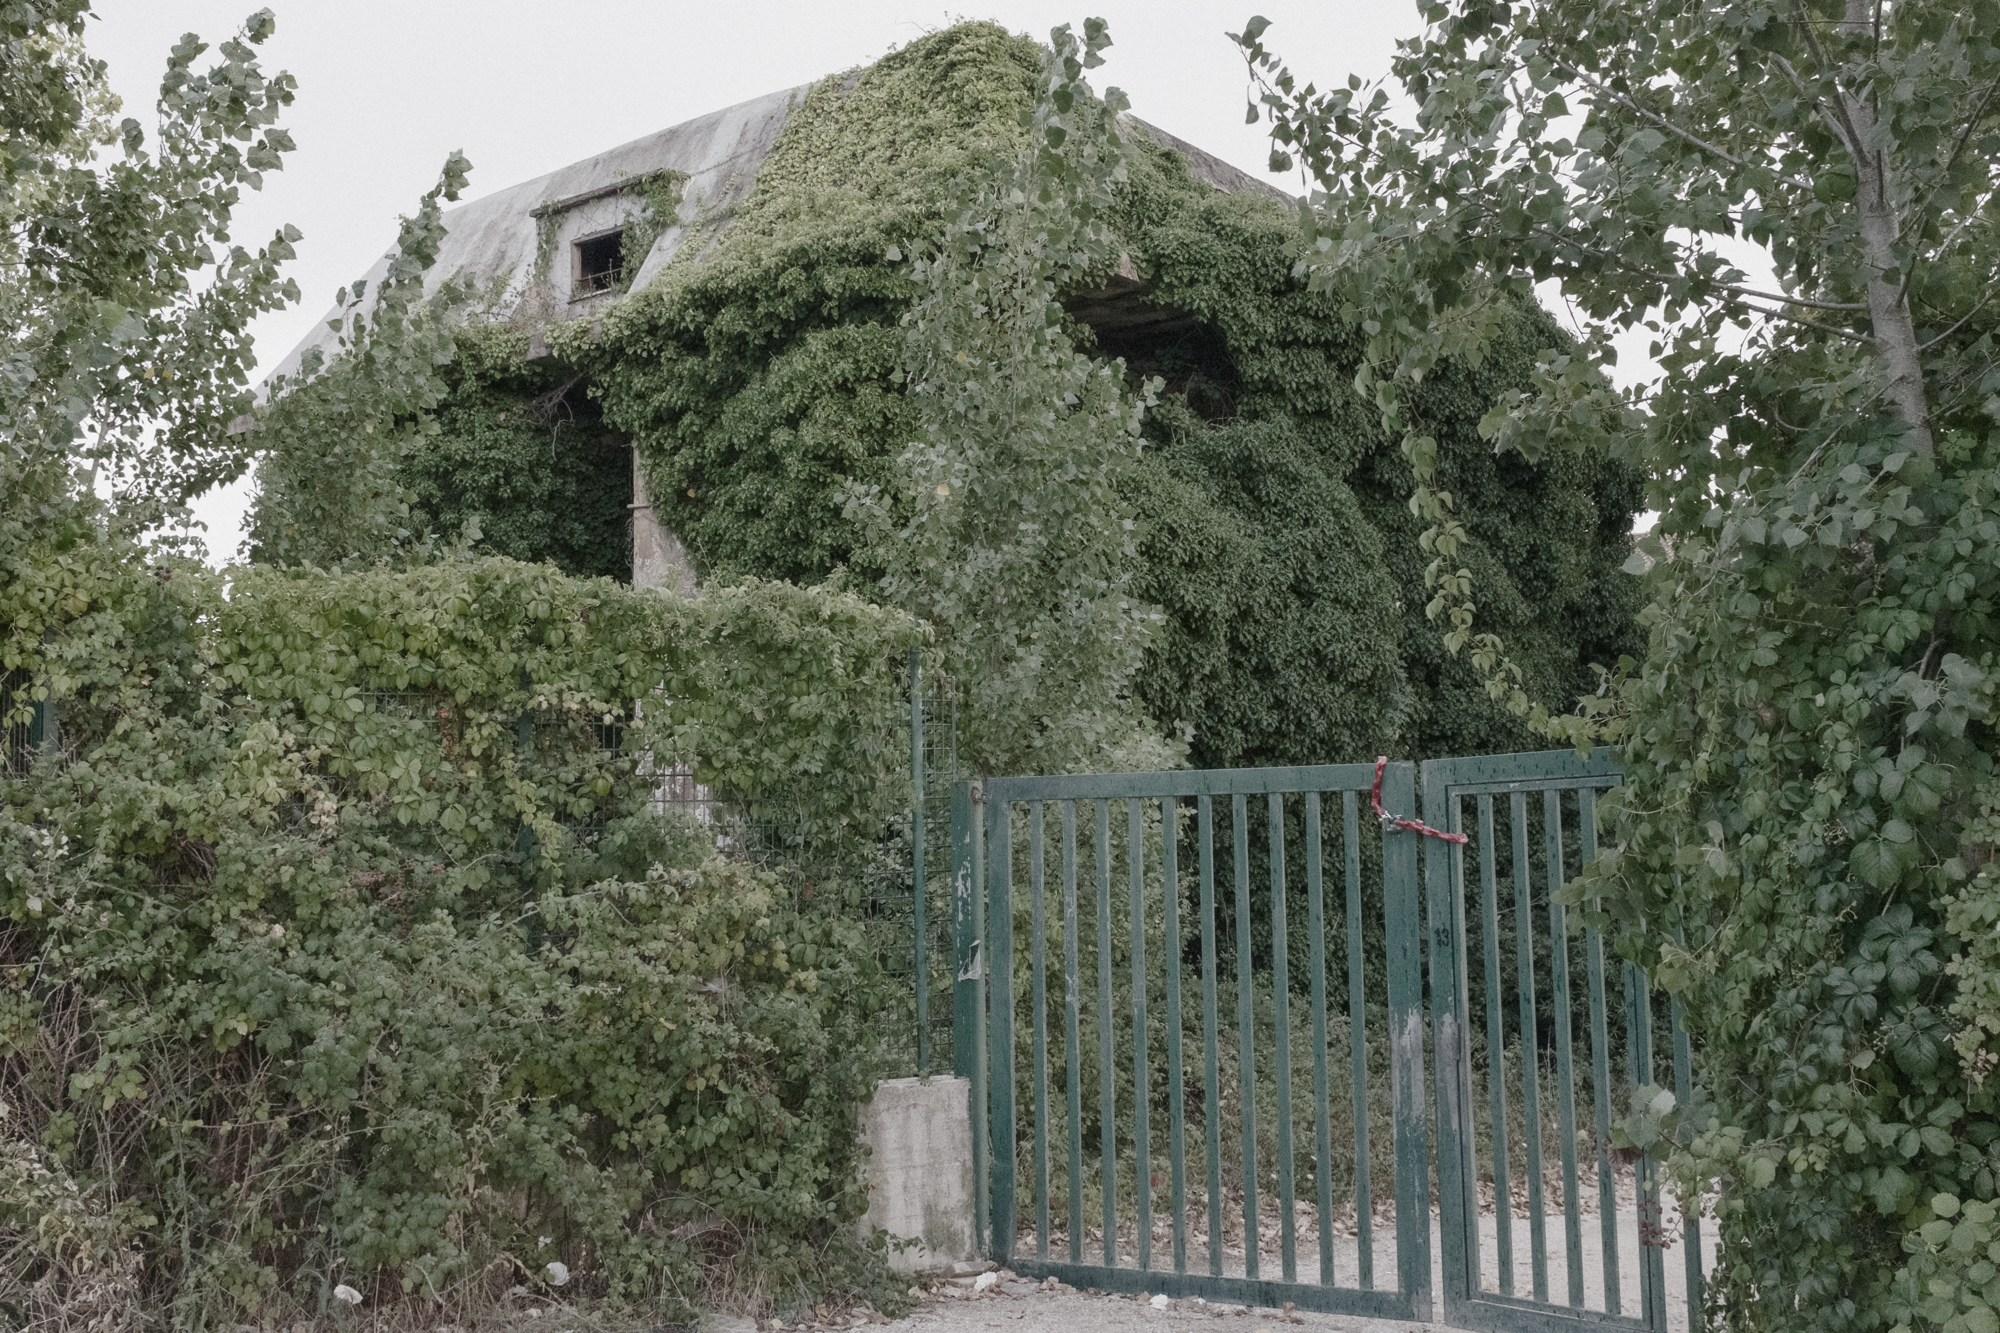  Edificio abbandonato all’interno della Riserva naturale di Torre Astura. Nettuno (RM), 2015.  La riserva ospita il poligono militare di Nettuno ed è attraversata dal fiume Astura, che sfocia nella sua estremità meridionale dopo aver attraversato l’A